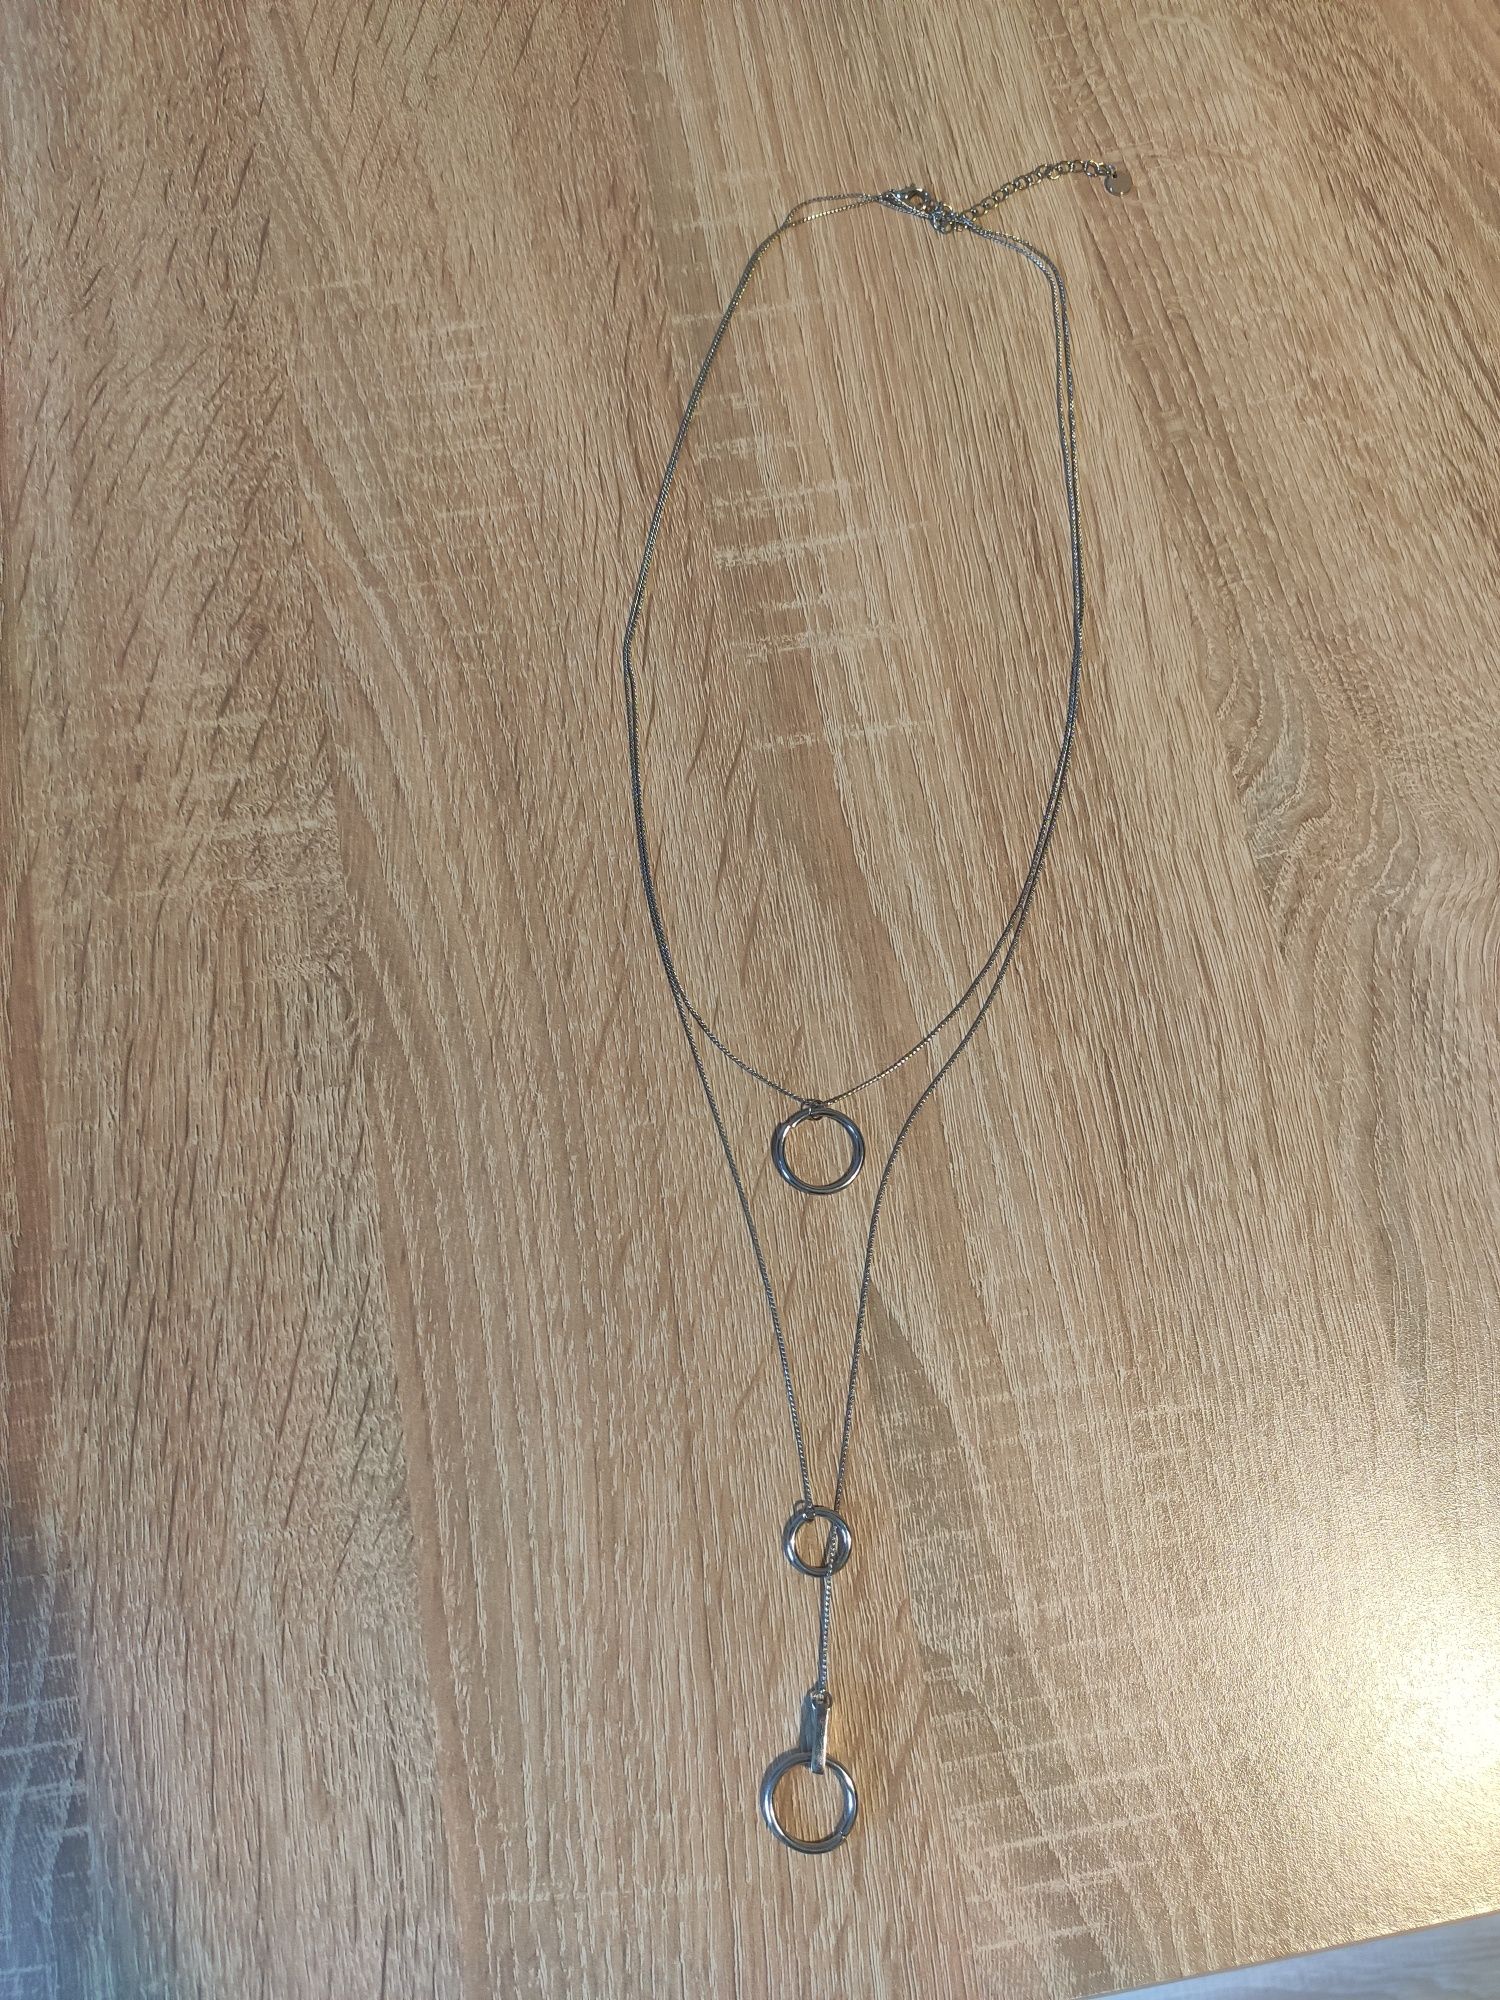 Naszyjnik długi z kółkami Reserved - kolor srebrny  NOWY